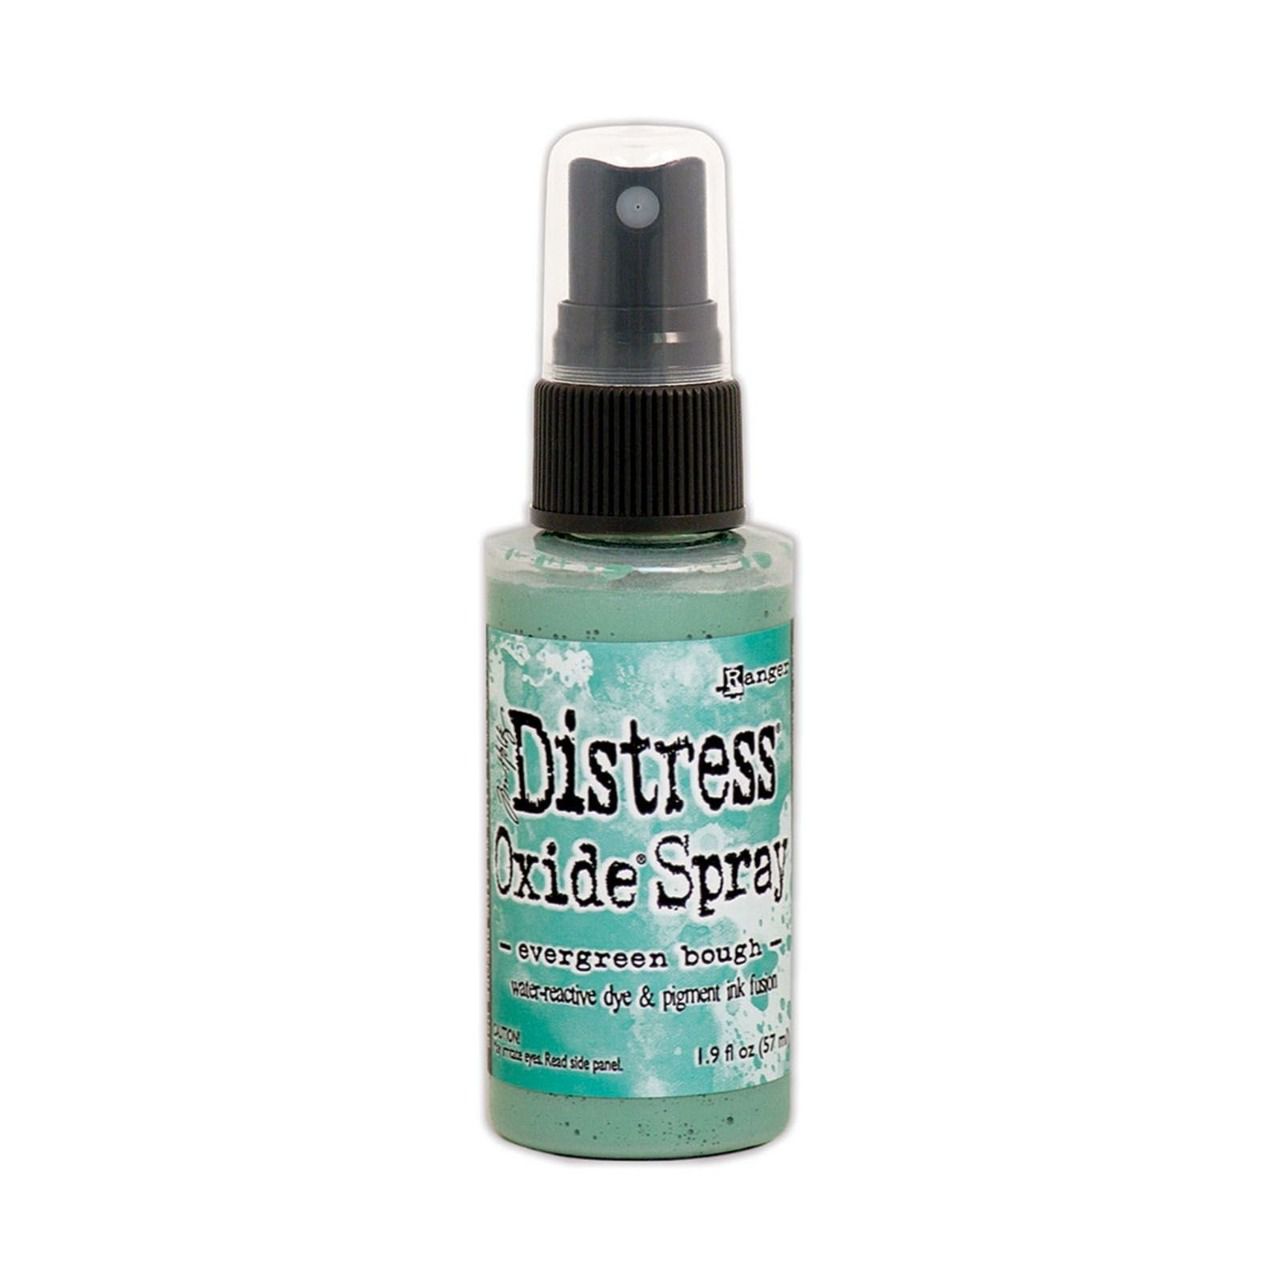 Distress spray oxide : Evergreen bough